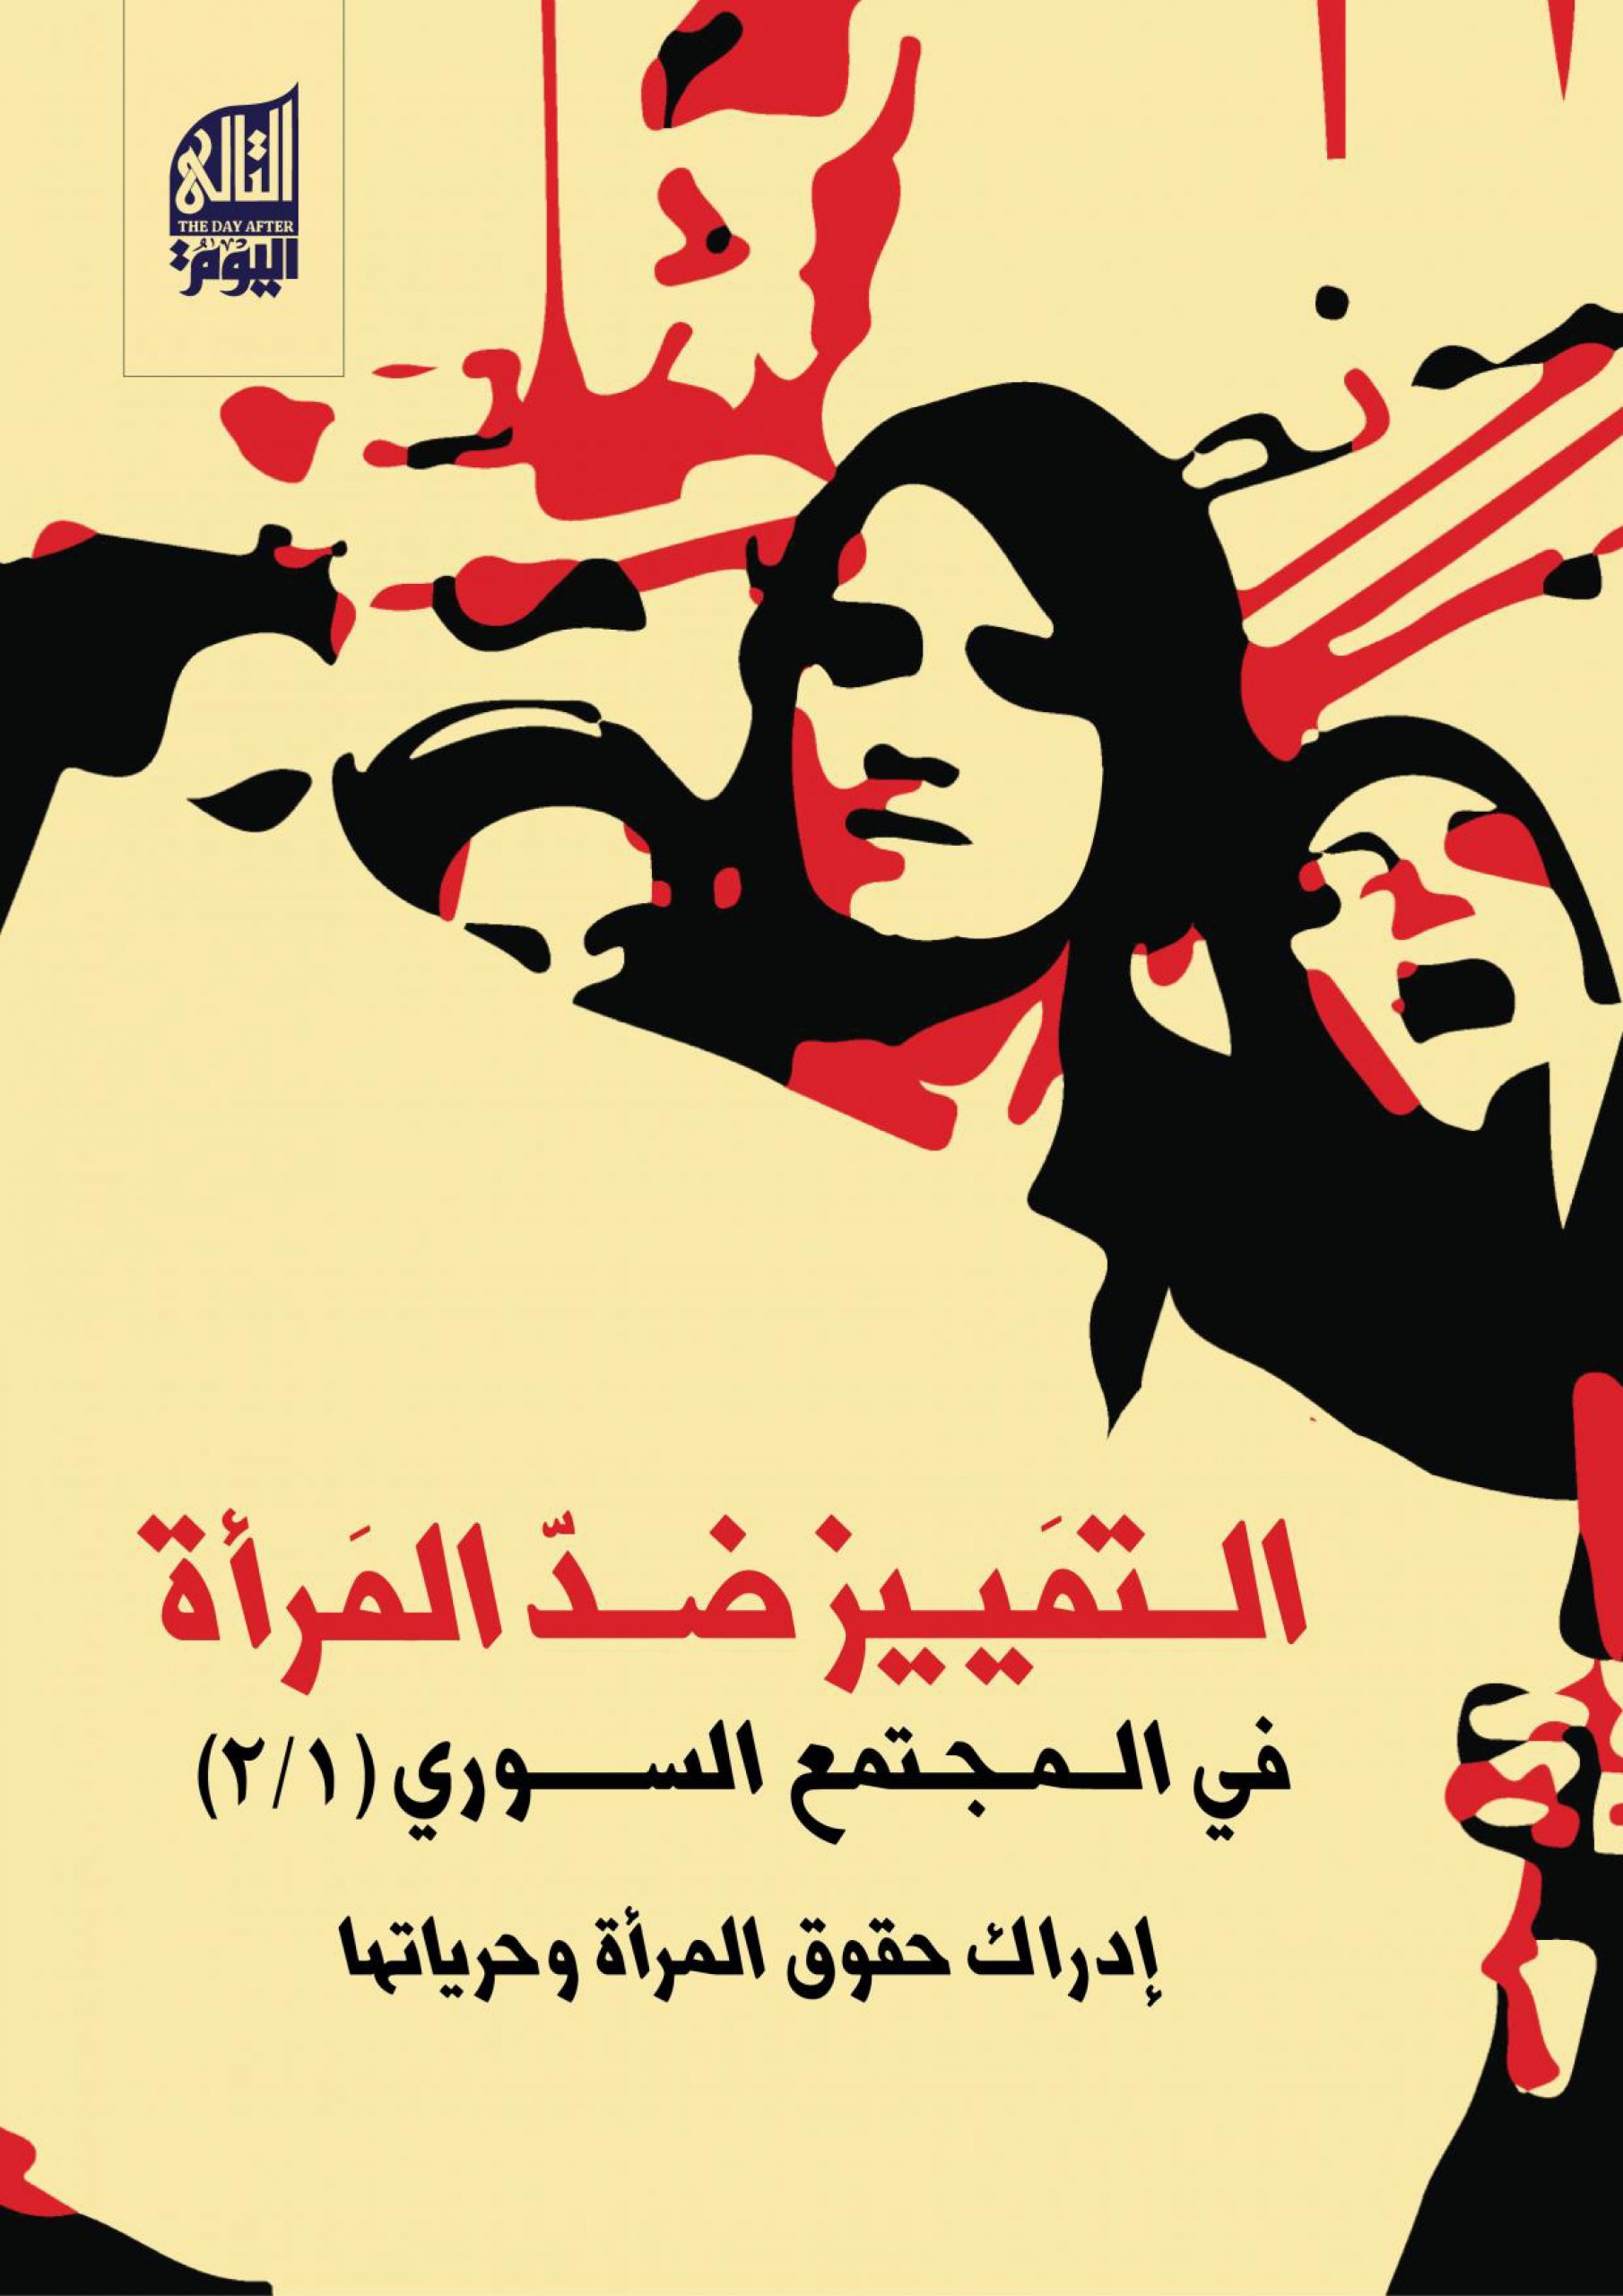 التمييز ضد المرأة في المجتمع السوري: إدراك حقوق المرأة وحرياتها (I/II)